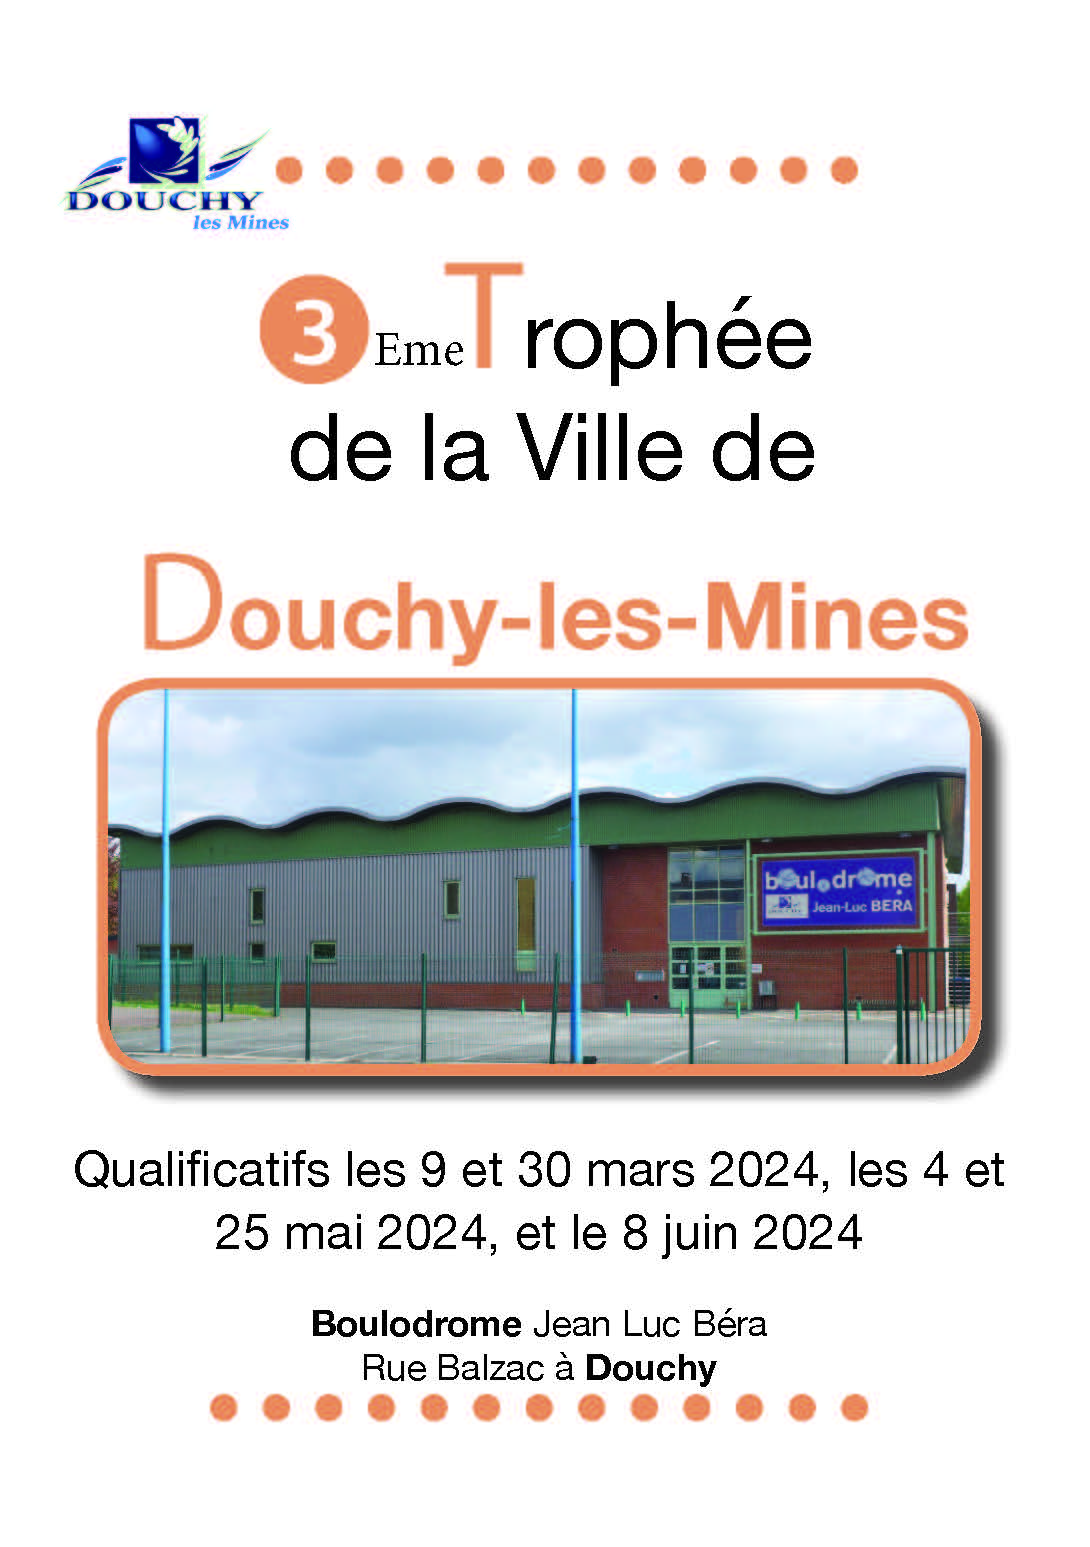 Concours en Doublette le 4 mai 2024 - Douchy-les-Mines - 59282